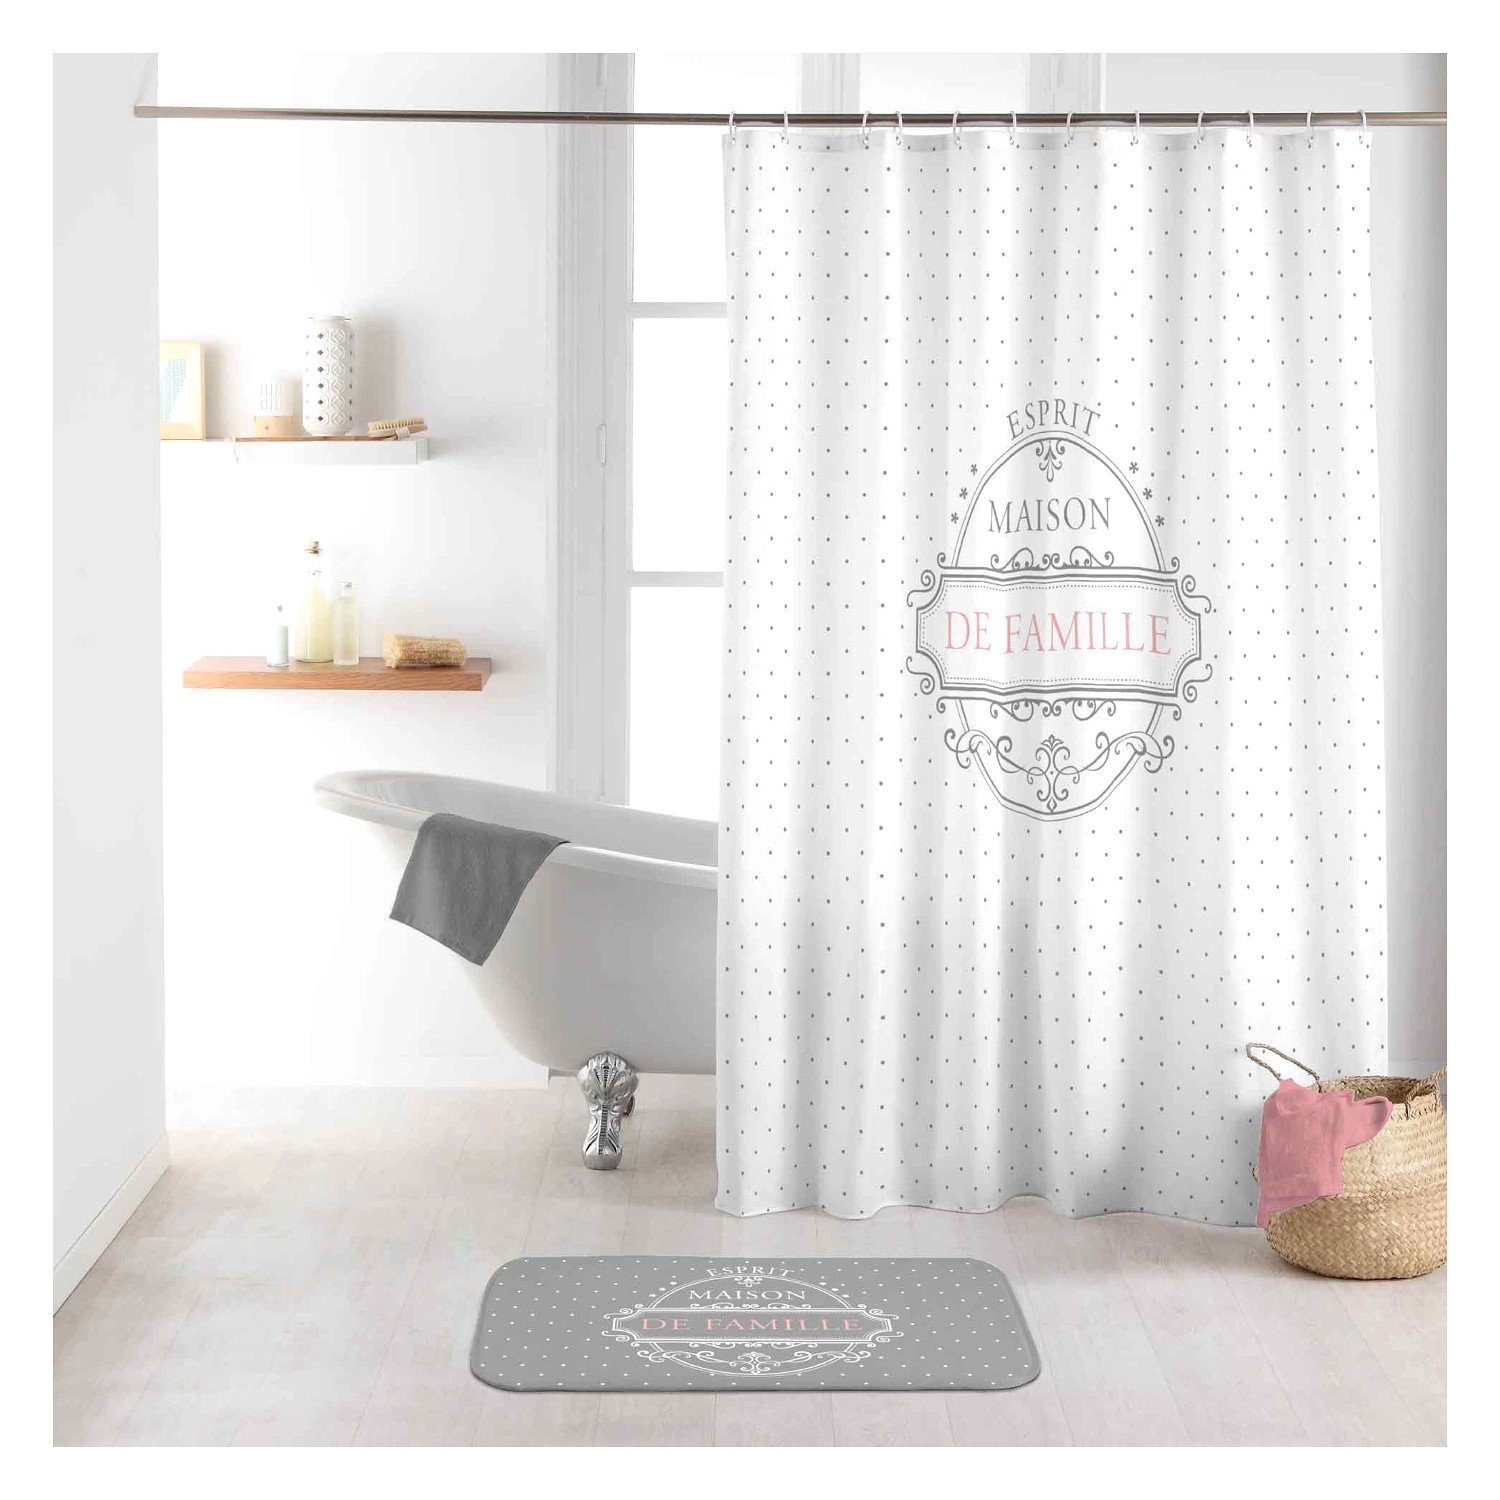 weis Textil Duschvorhang weiß 180x200 cm Ringe/Vorhang Dusche Bad 